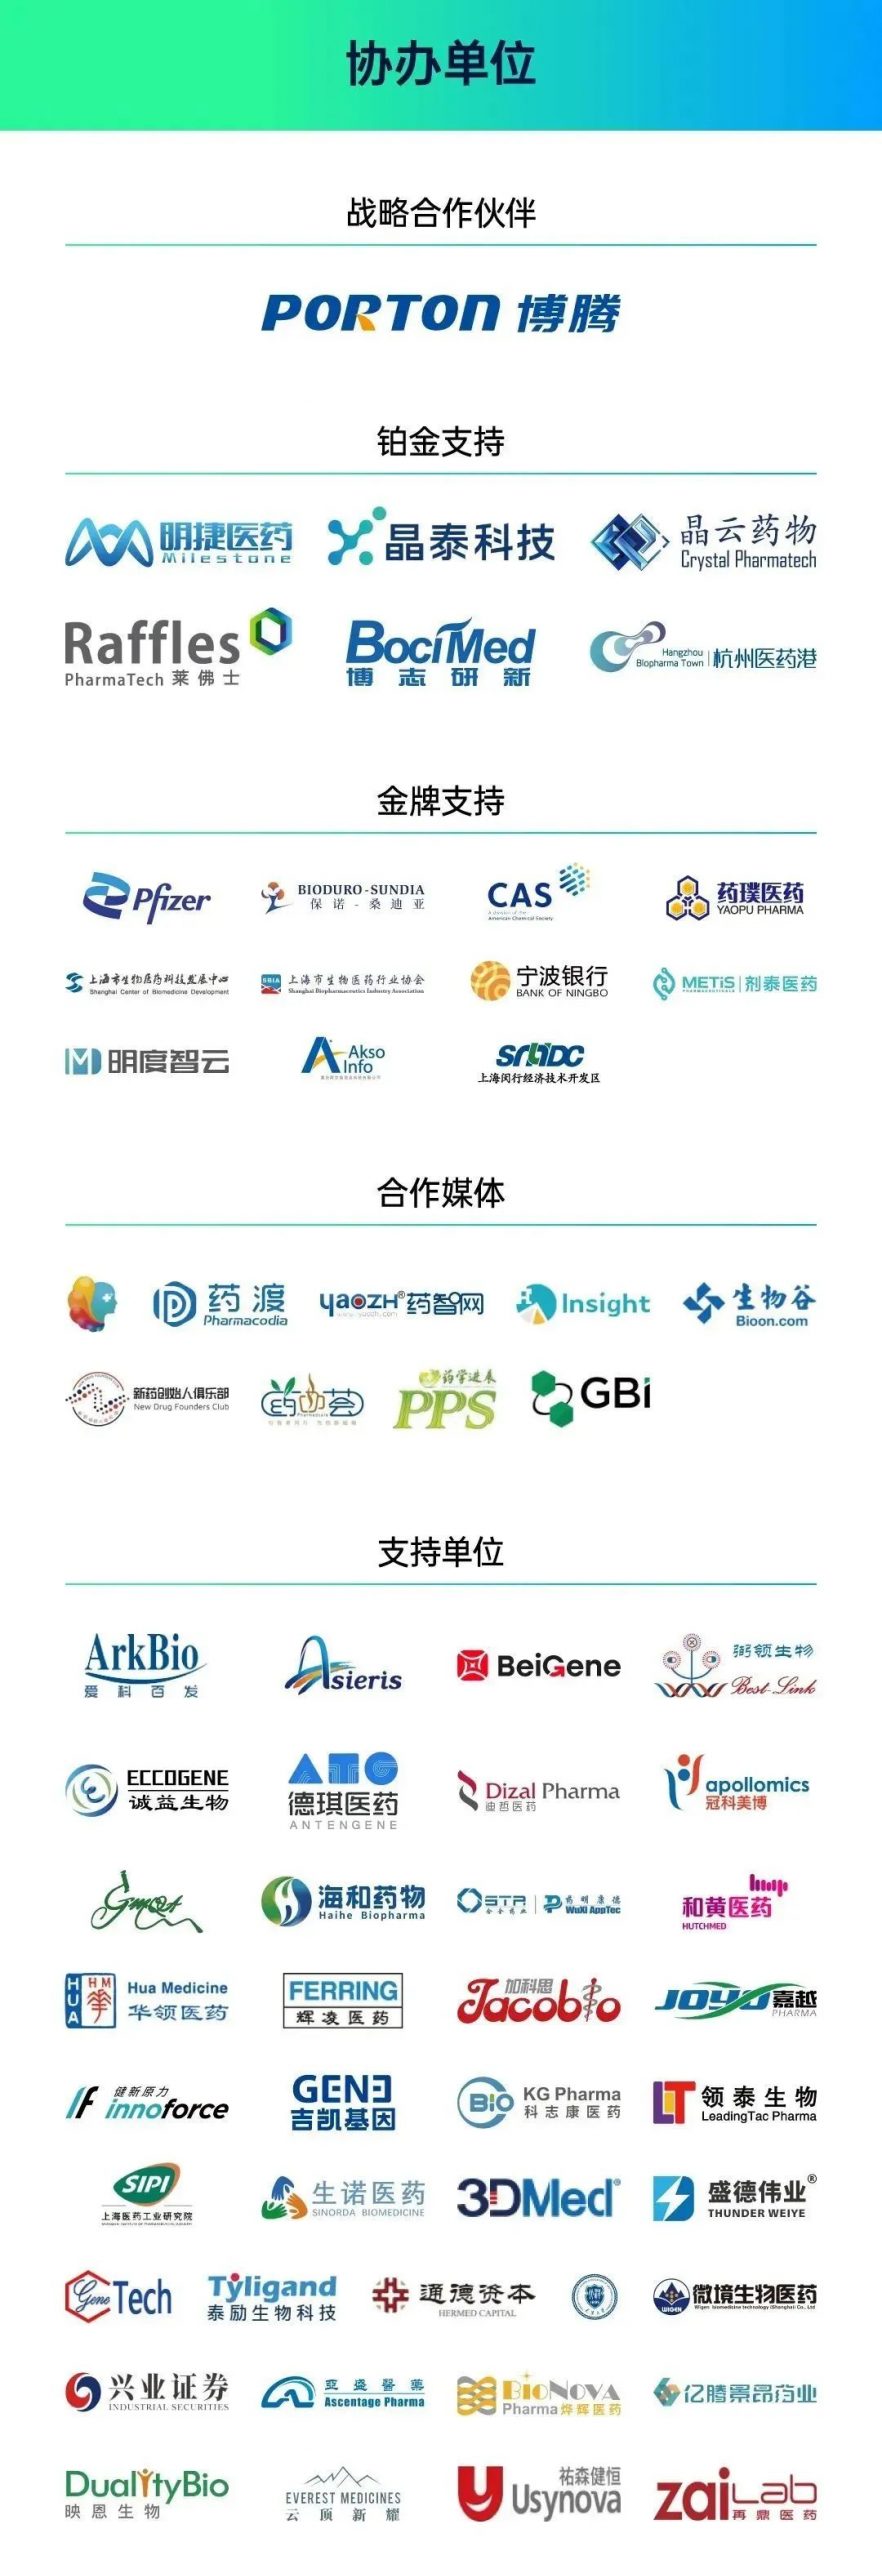 与几百位同药们欢聚上海！海阔凭药去，大道创新行! 2022第三届中国新药CMC高峰论坛第二轮通知